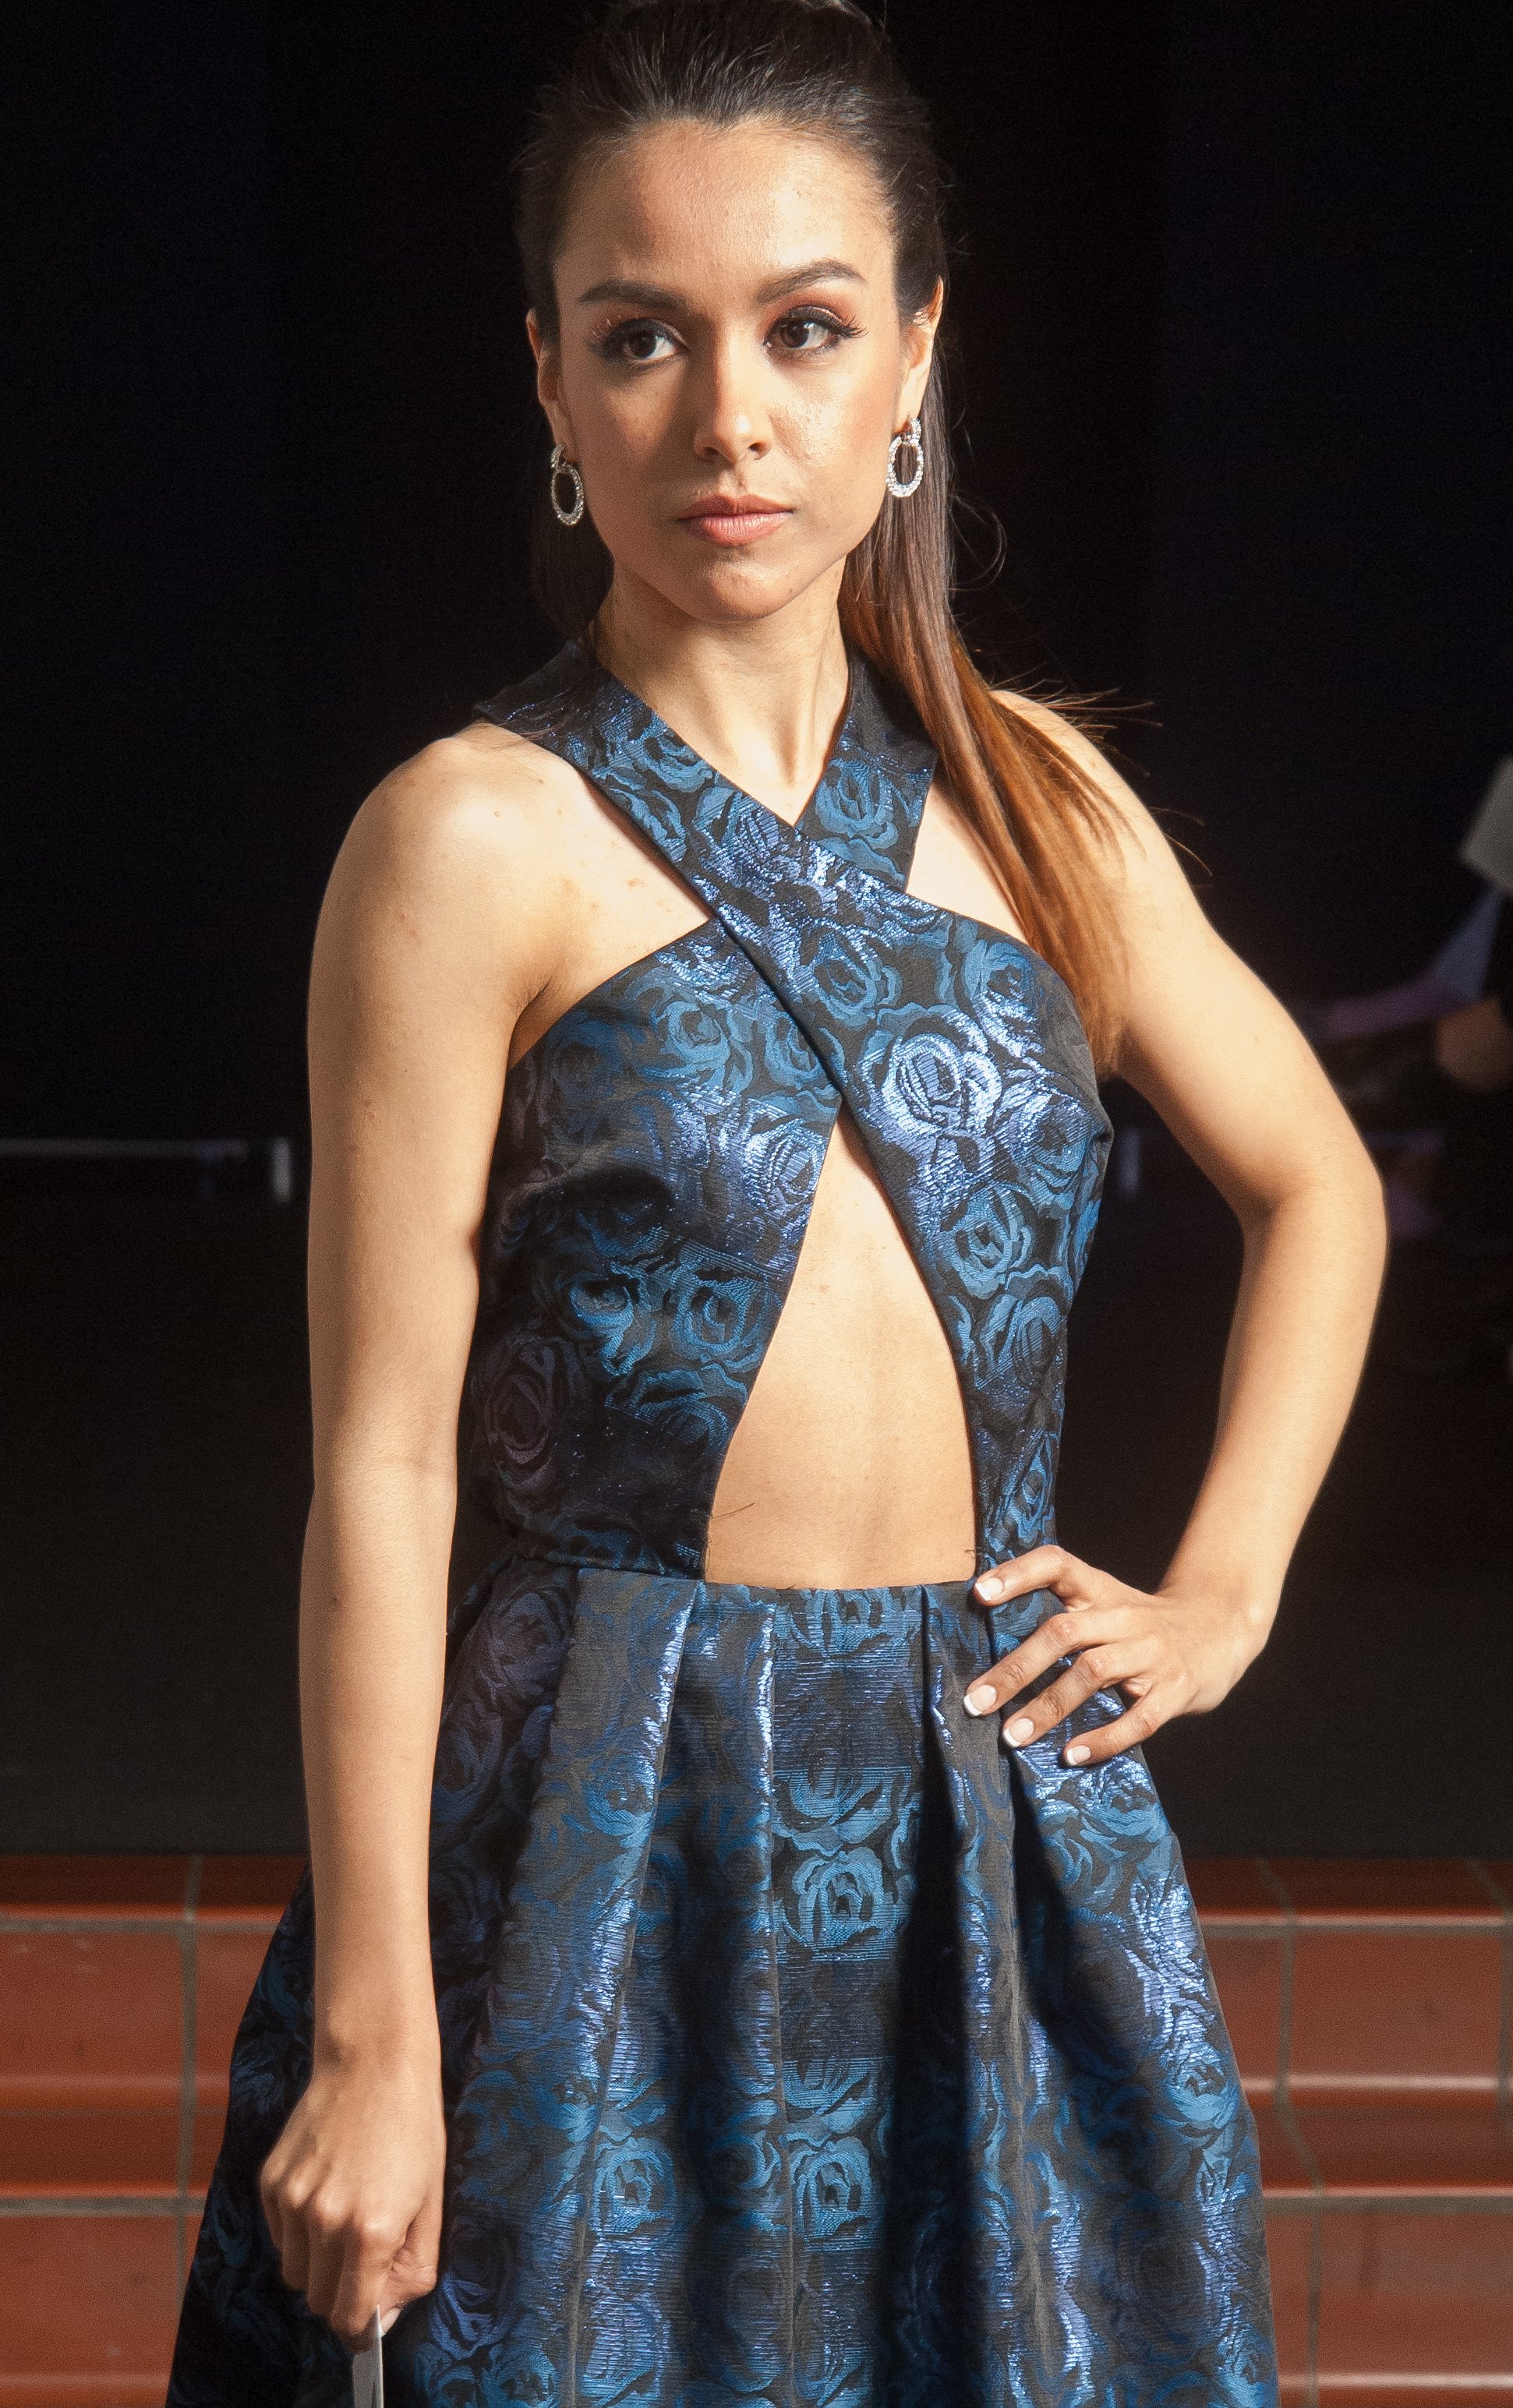 Model wearing navy blue cross-neck dress.